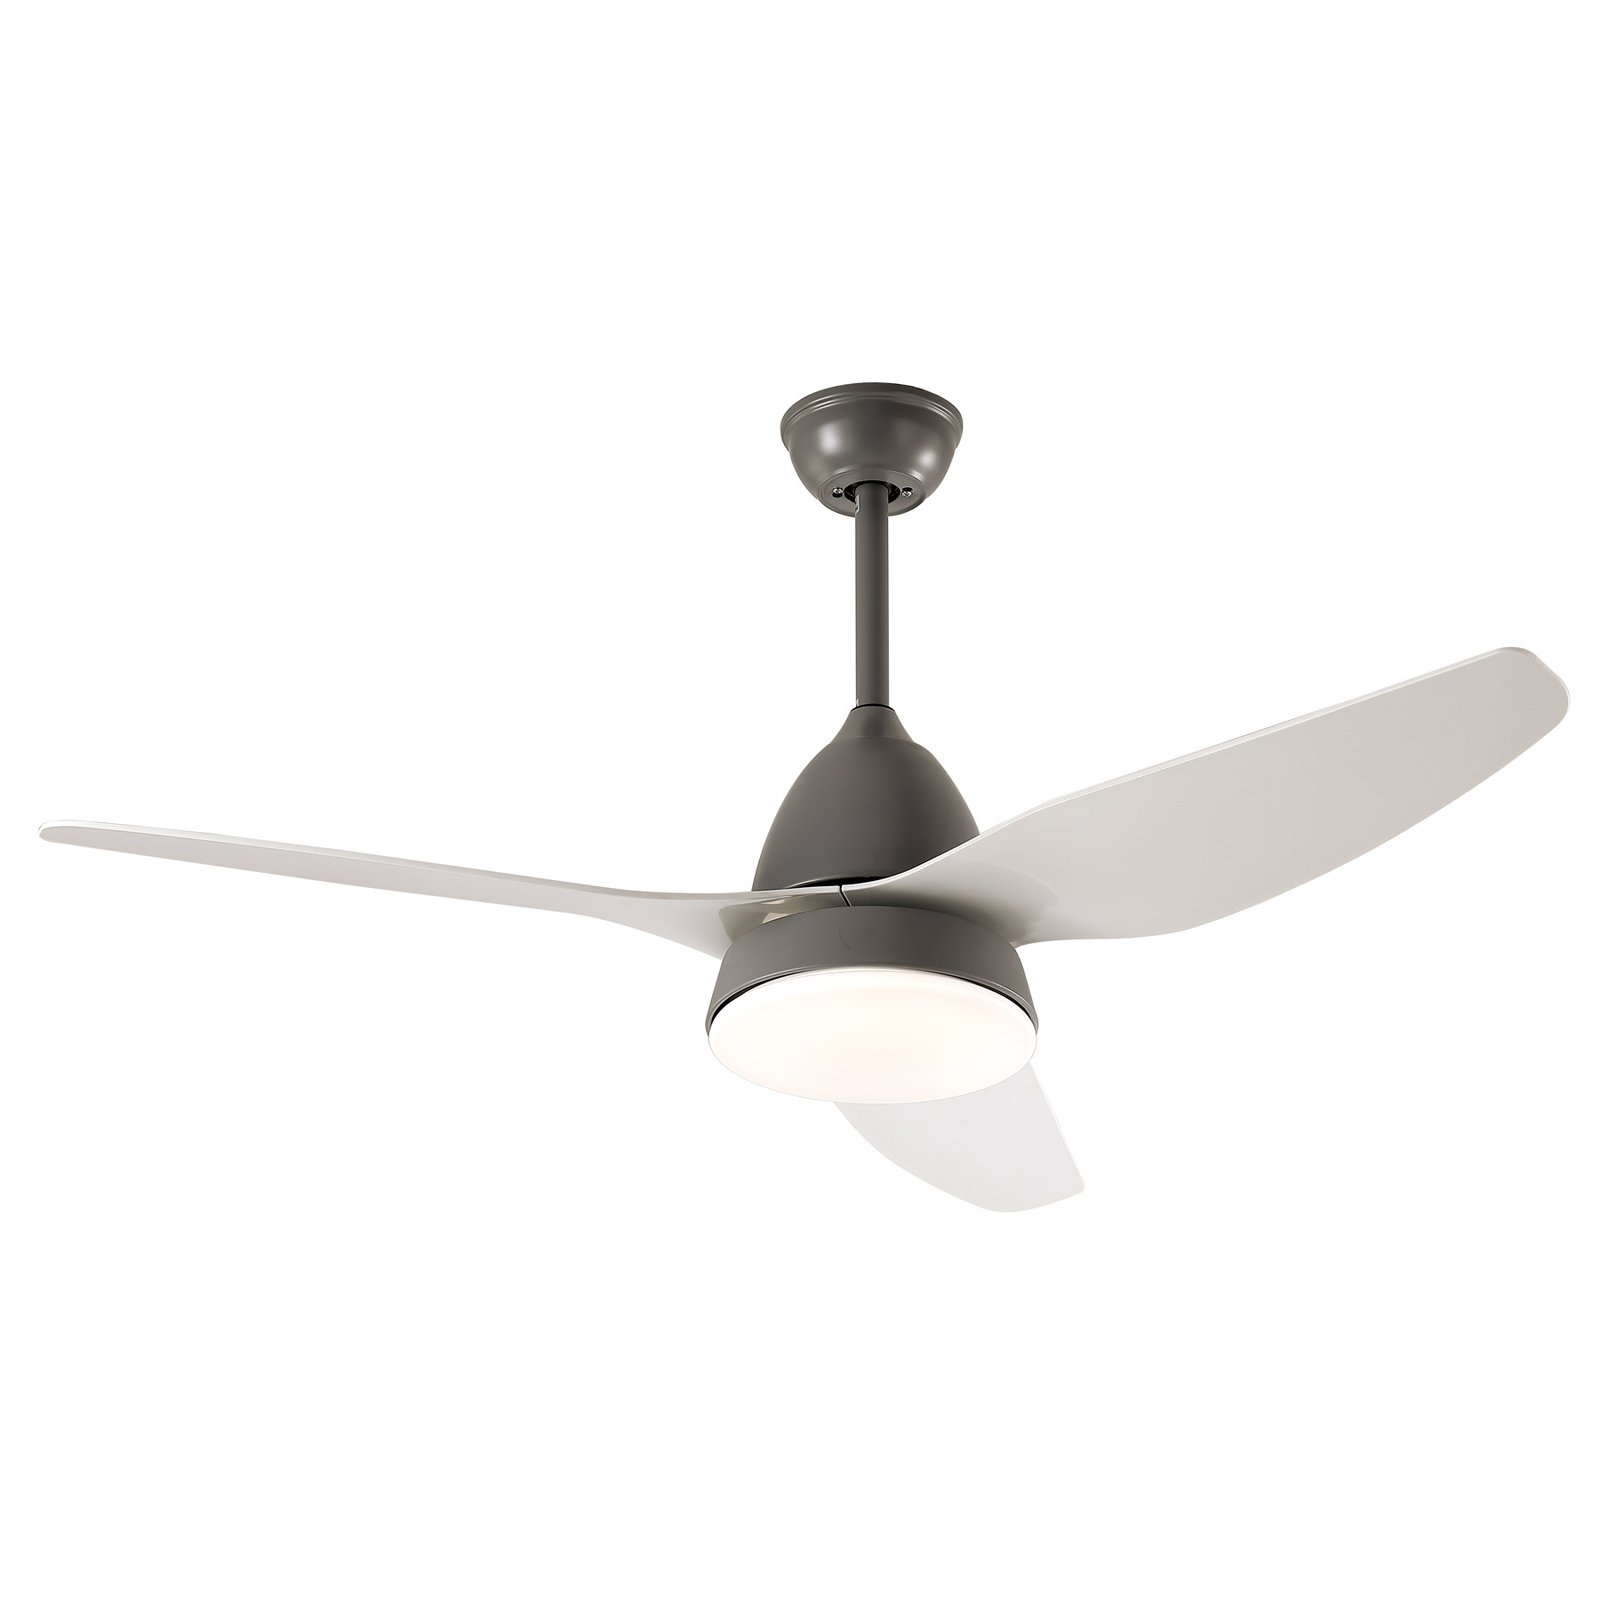 Starluna Coriano LED ceiling fan, grey